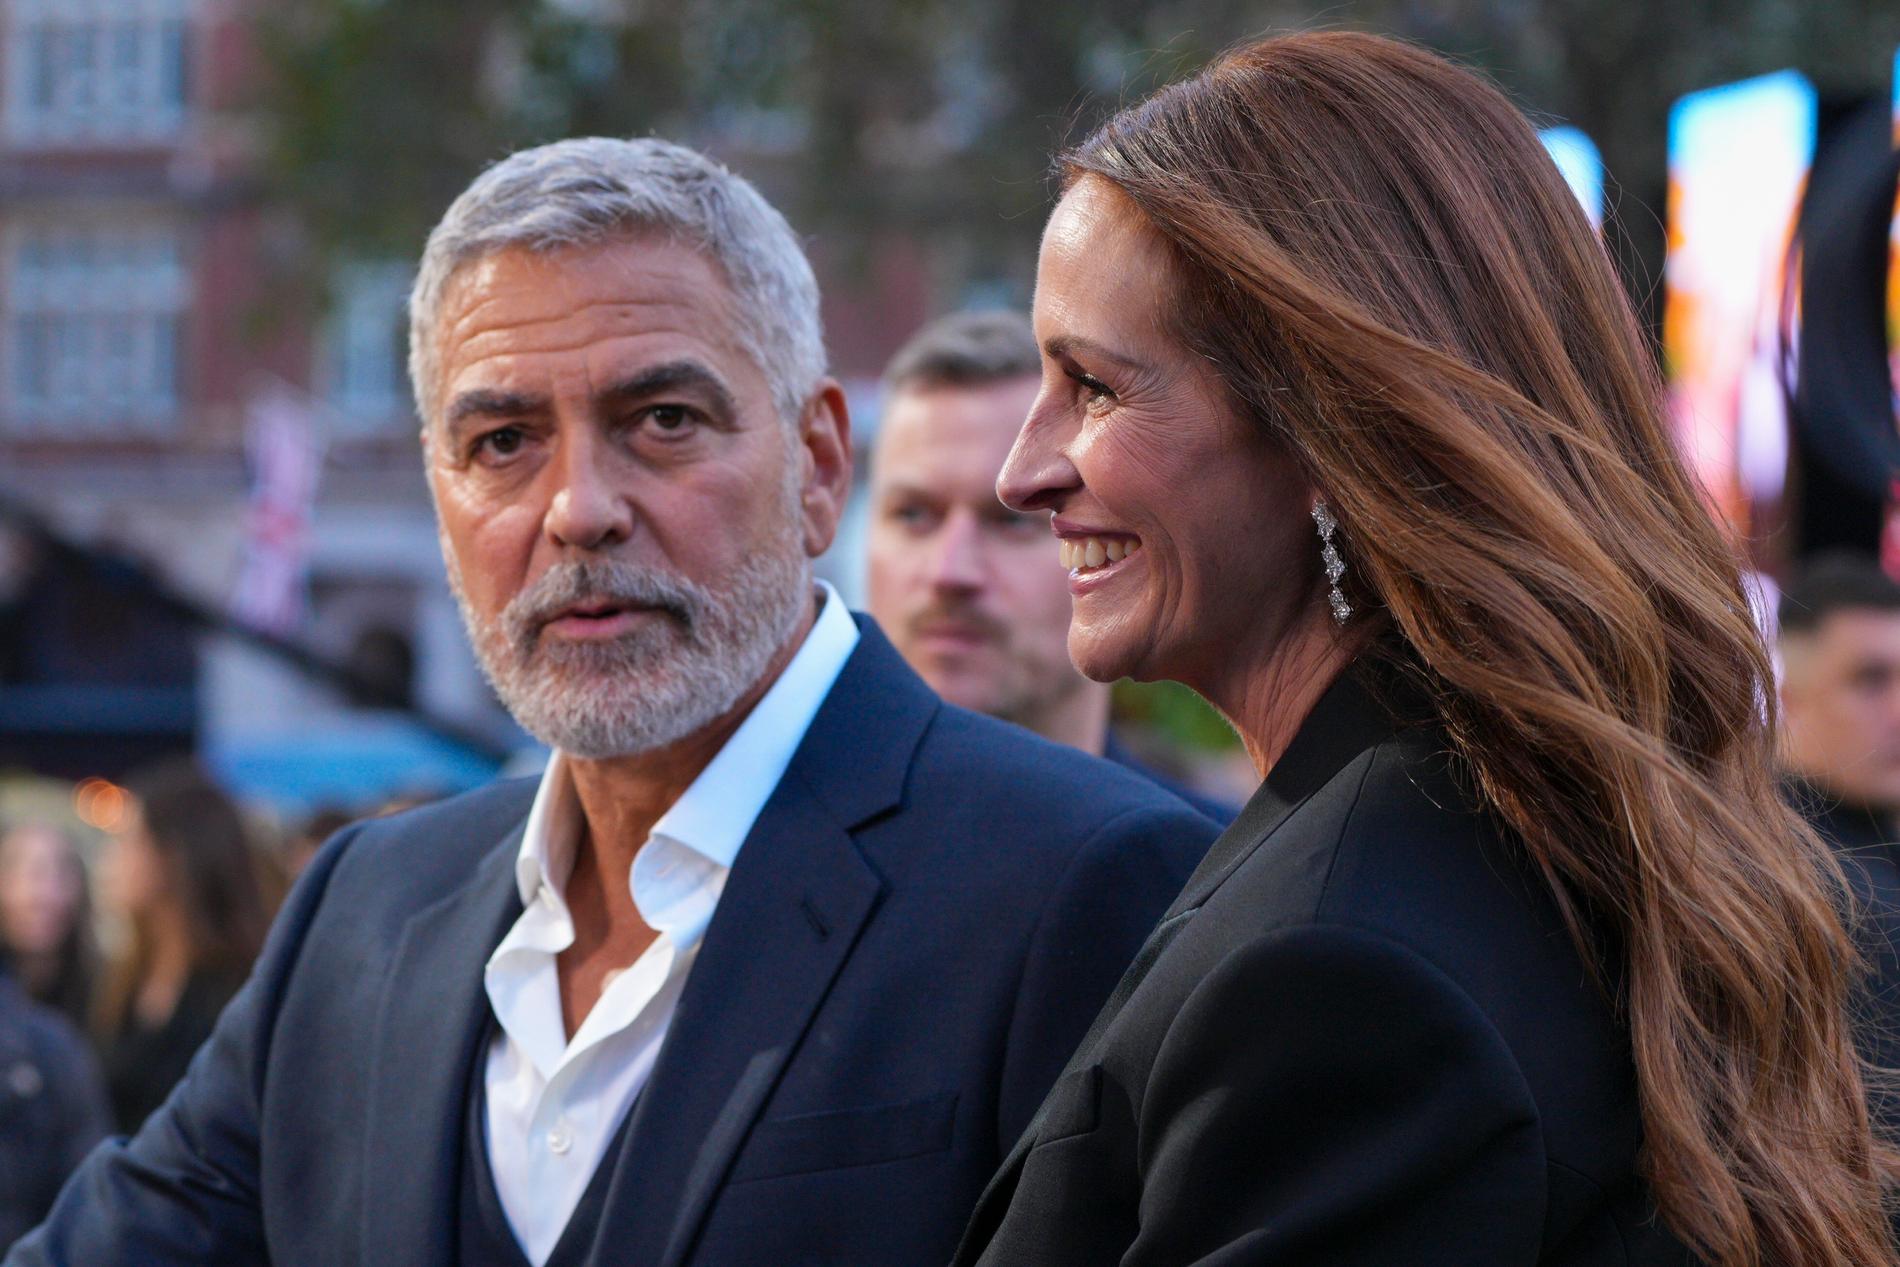 George Clooney och Julia Roberts spelar mot varandra i "Ticket to paradise".